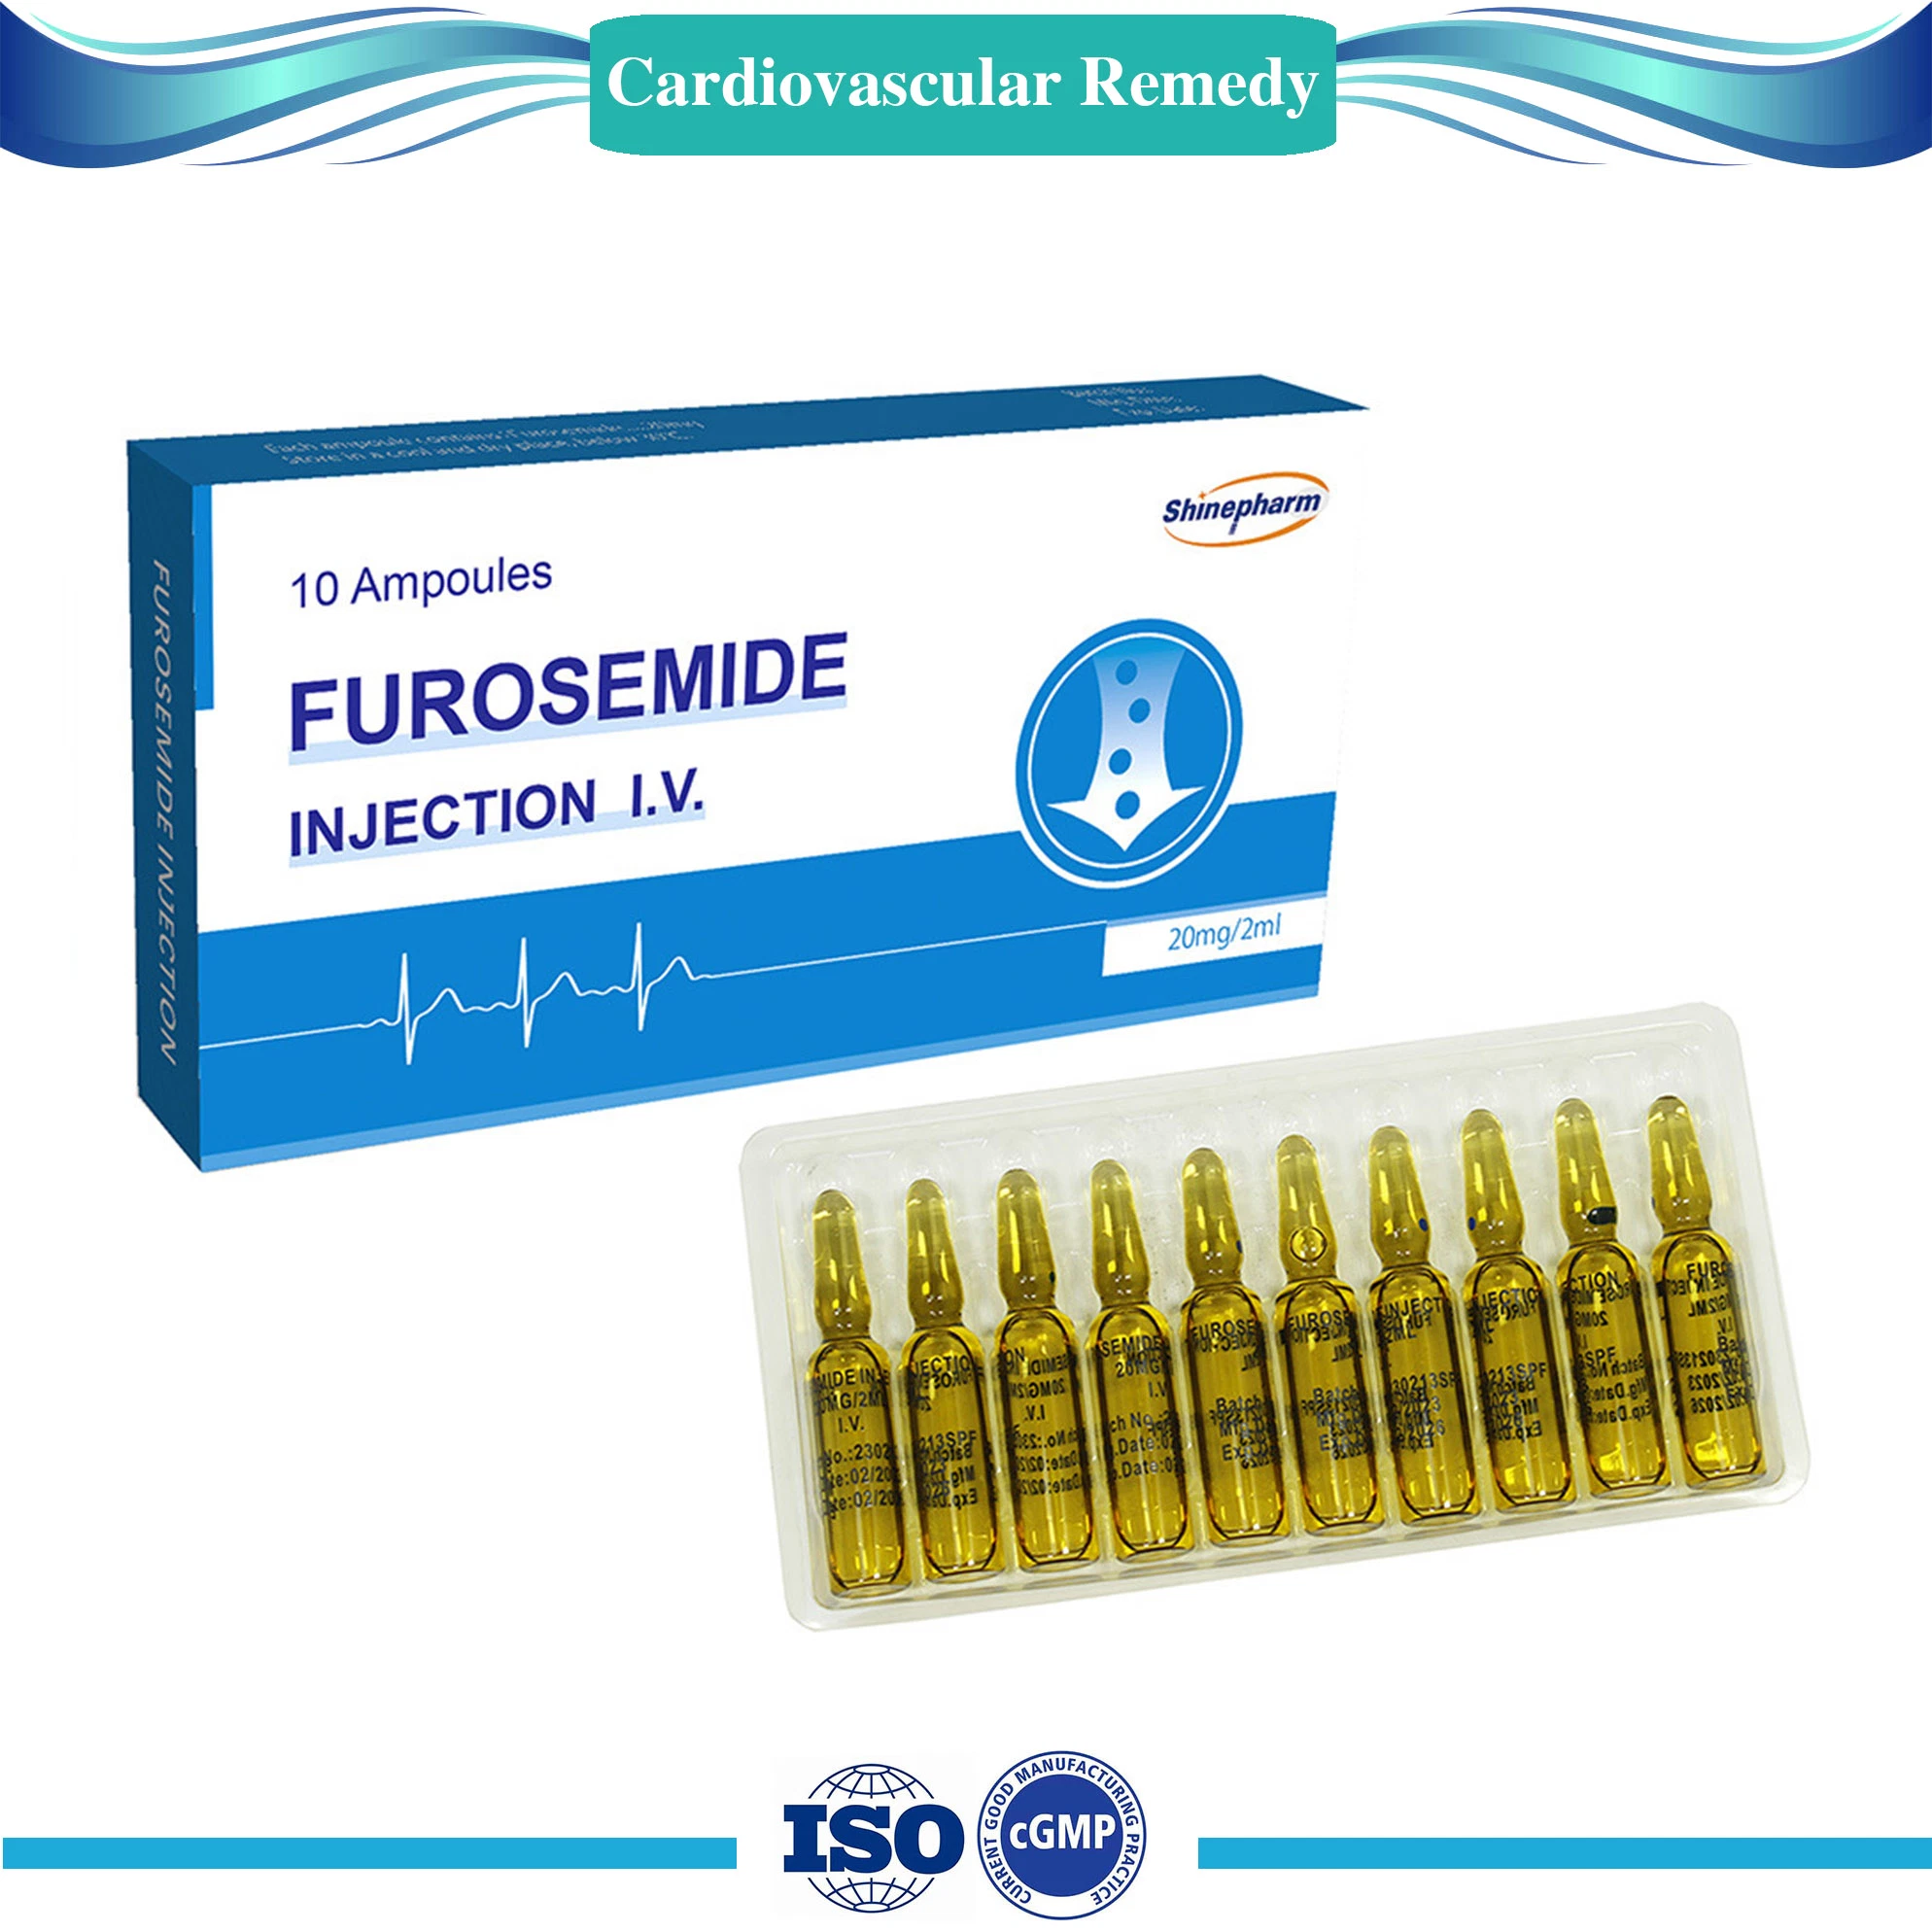 20mg/2ml Inyección de furosemida, Medicina Cardiovascular